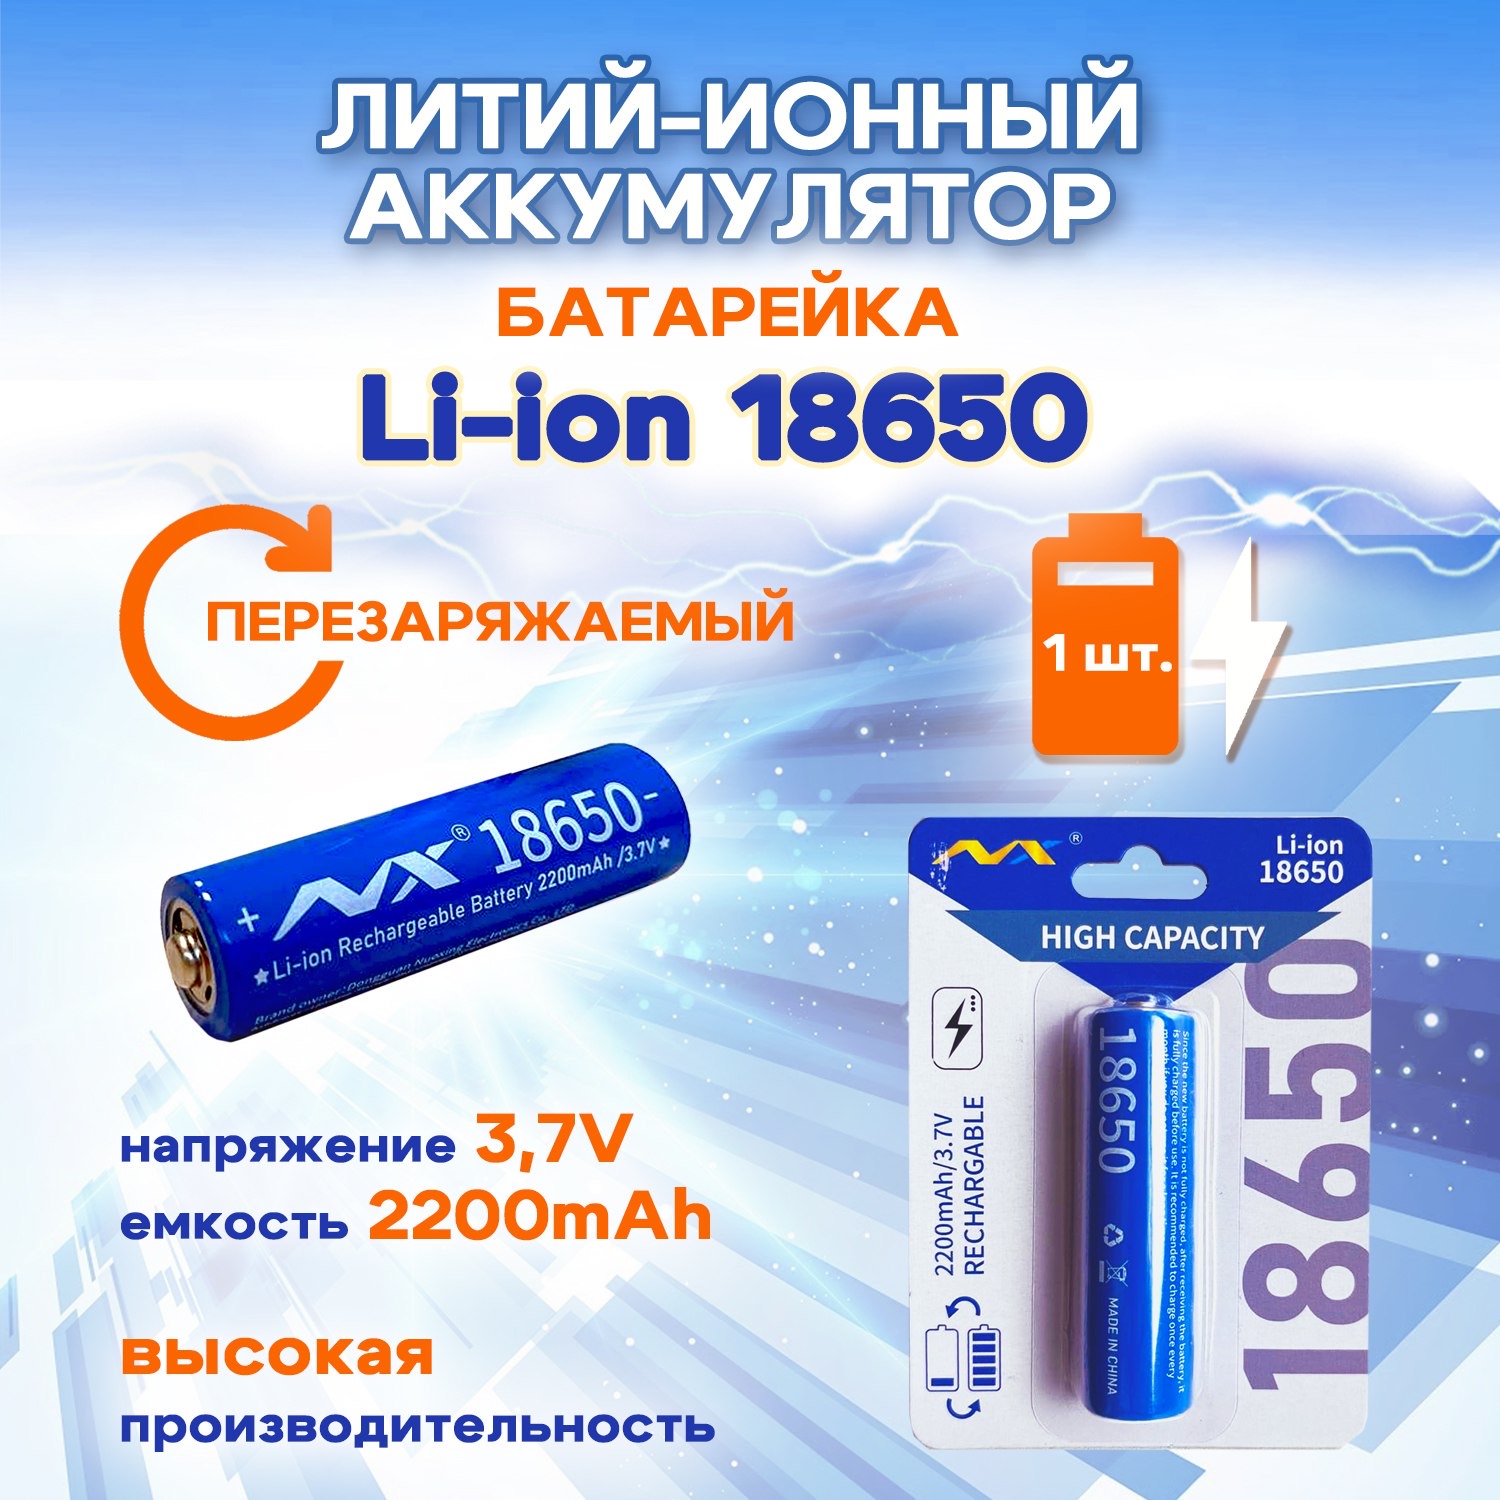 Батарейка-аккумулятор SUPER ENERGY 18650 3,7 В литий-ионный перезаряжаемый 2200 mAh, 1 шт мультифонарь светодиодный armytek wizard c2 v4 magnet usb 18650 1200 лм аккумулятор